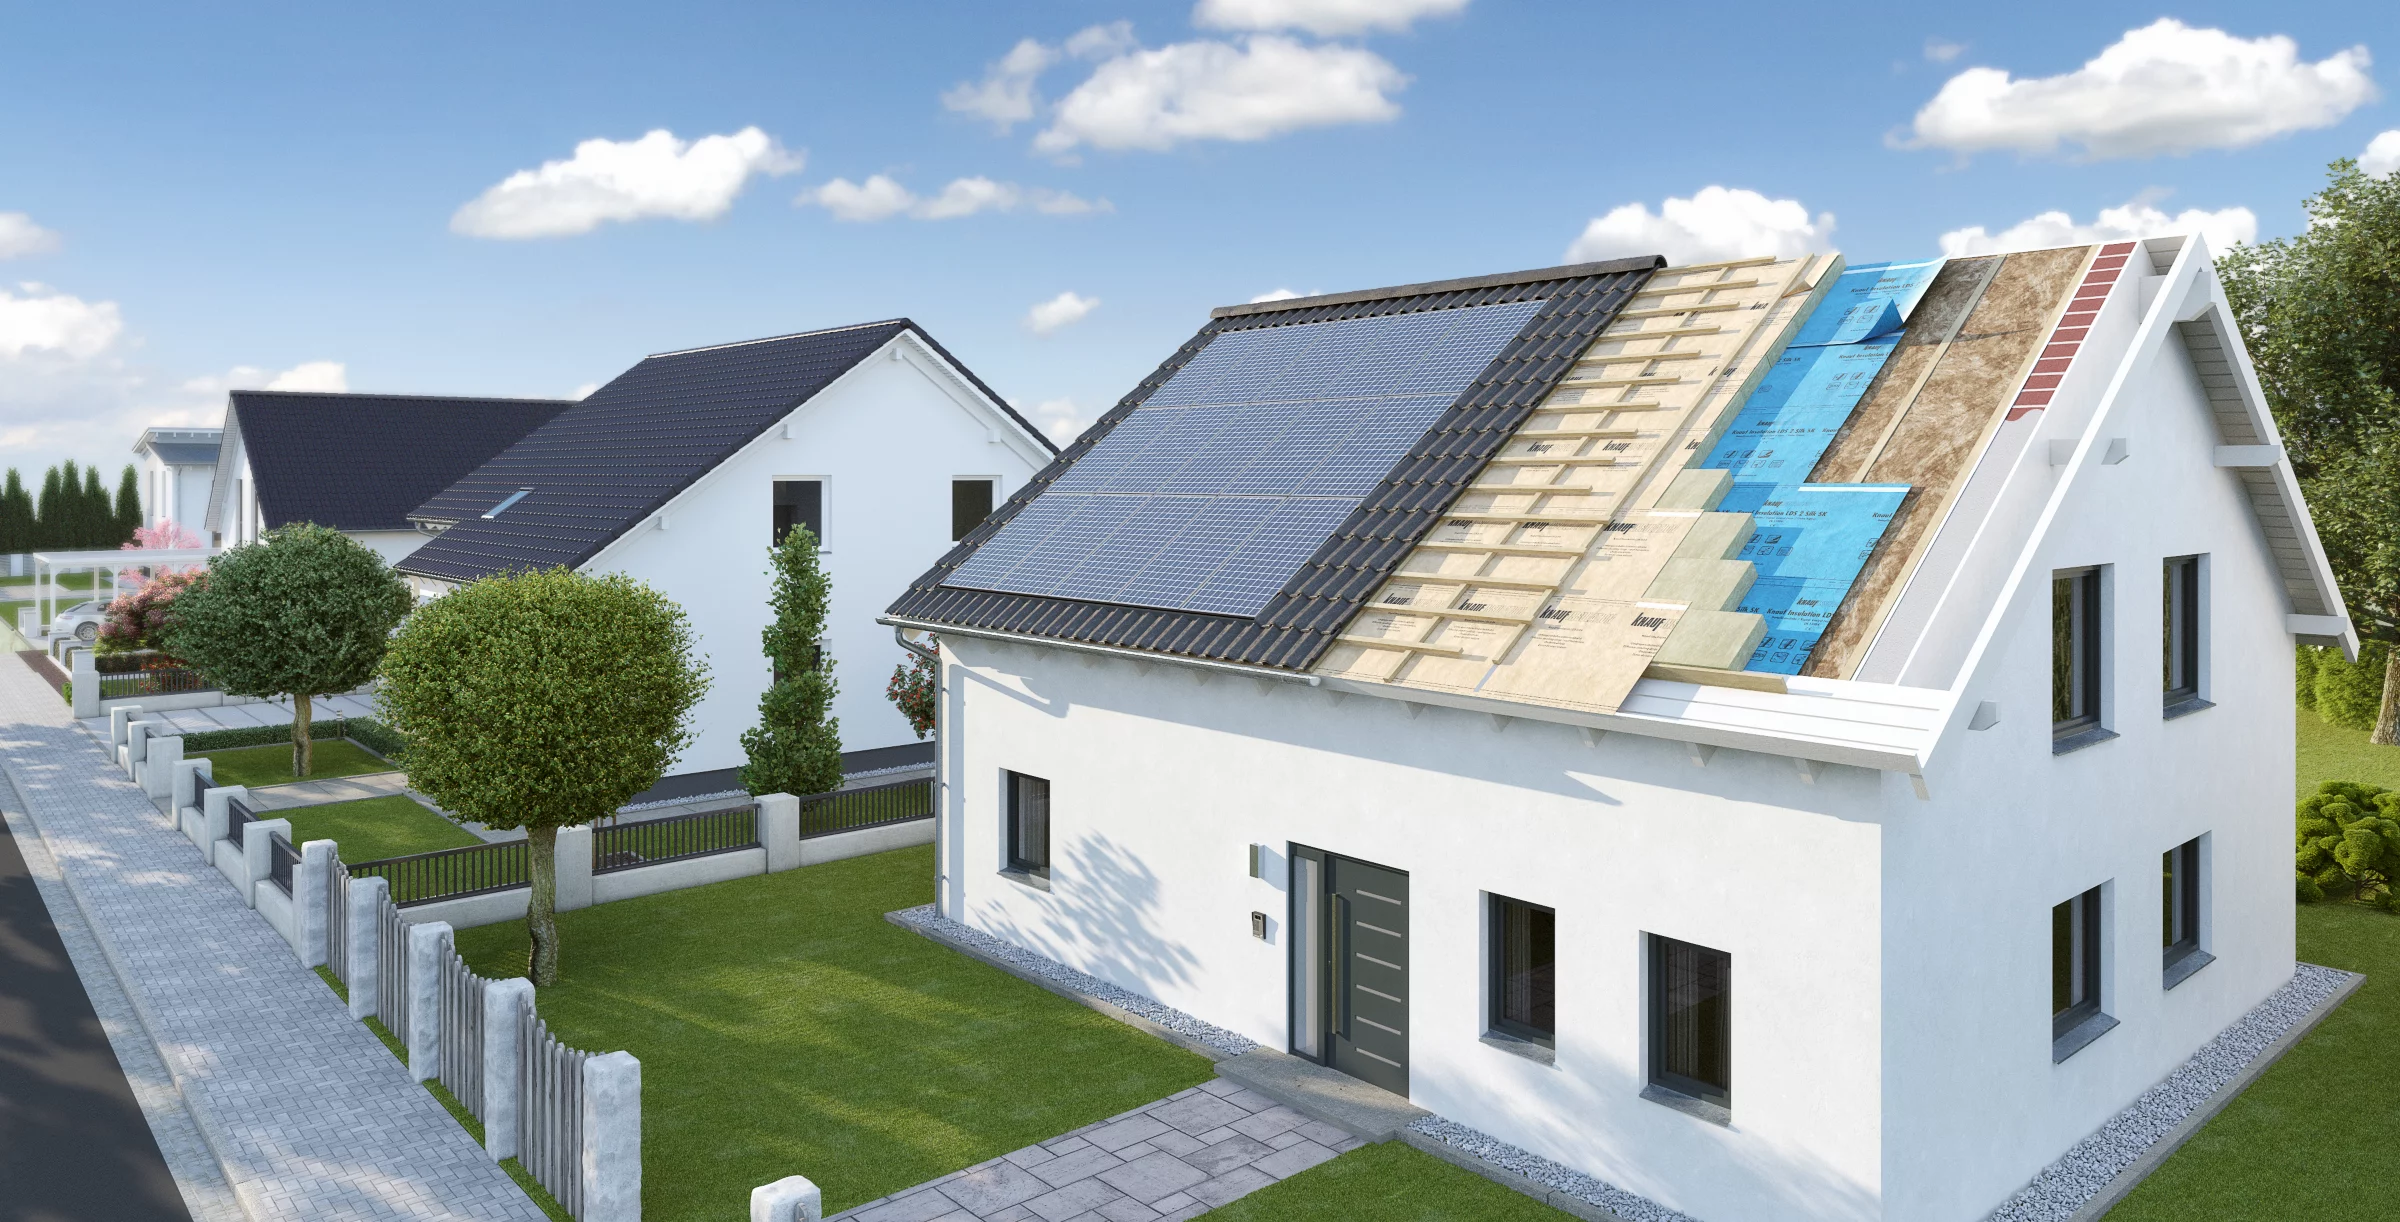 Dach Daemmung von aussen mit Solar Schicht Rendering